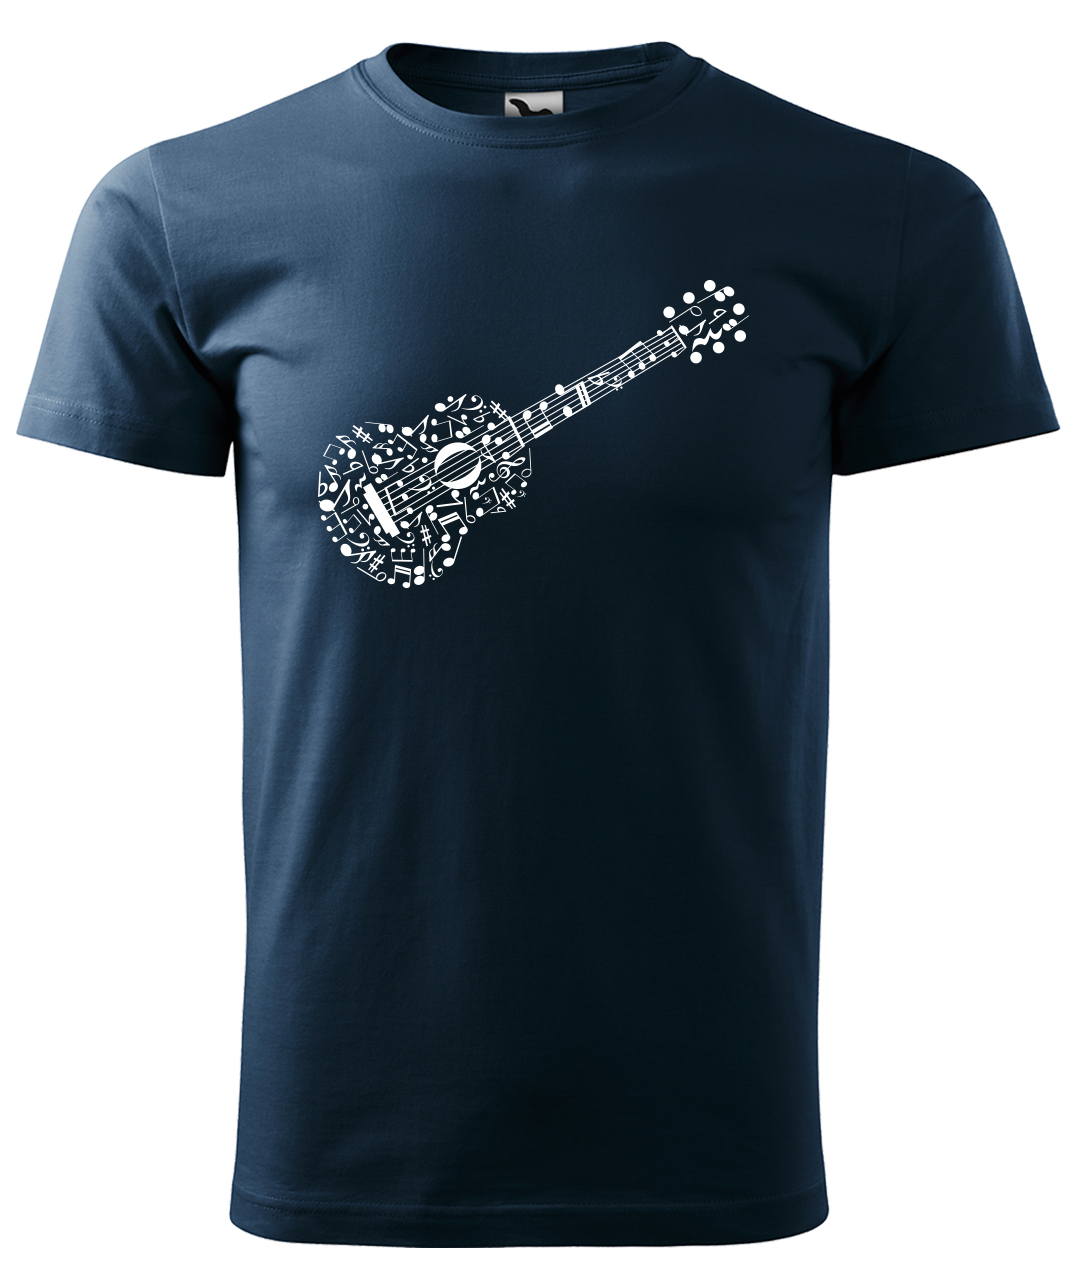 Dětské tričko s kytarou - Kytara z not Velikost: 10 let / 146 cm, Barva: Námořní modrá (02), Délka rukávu: Krátký rukáv